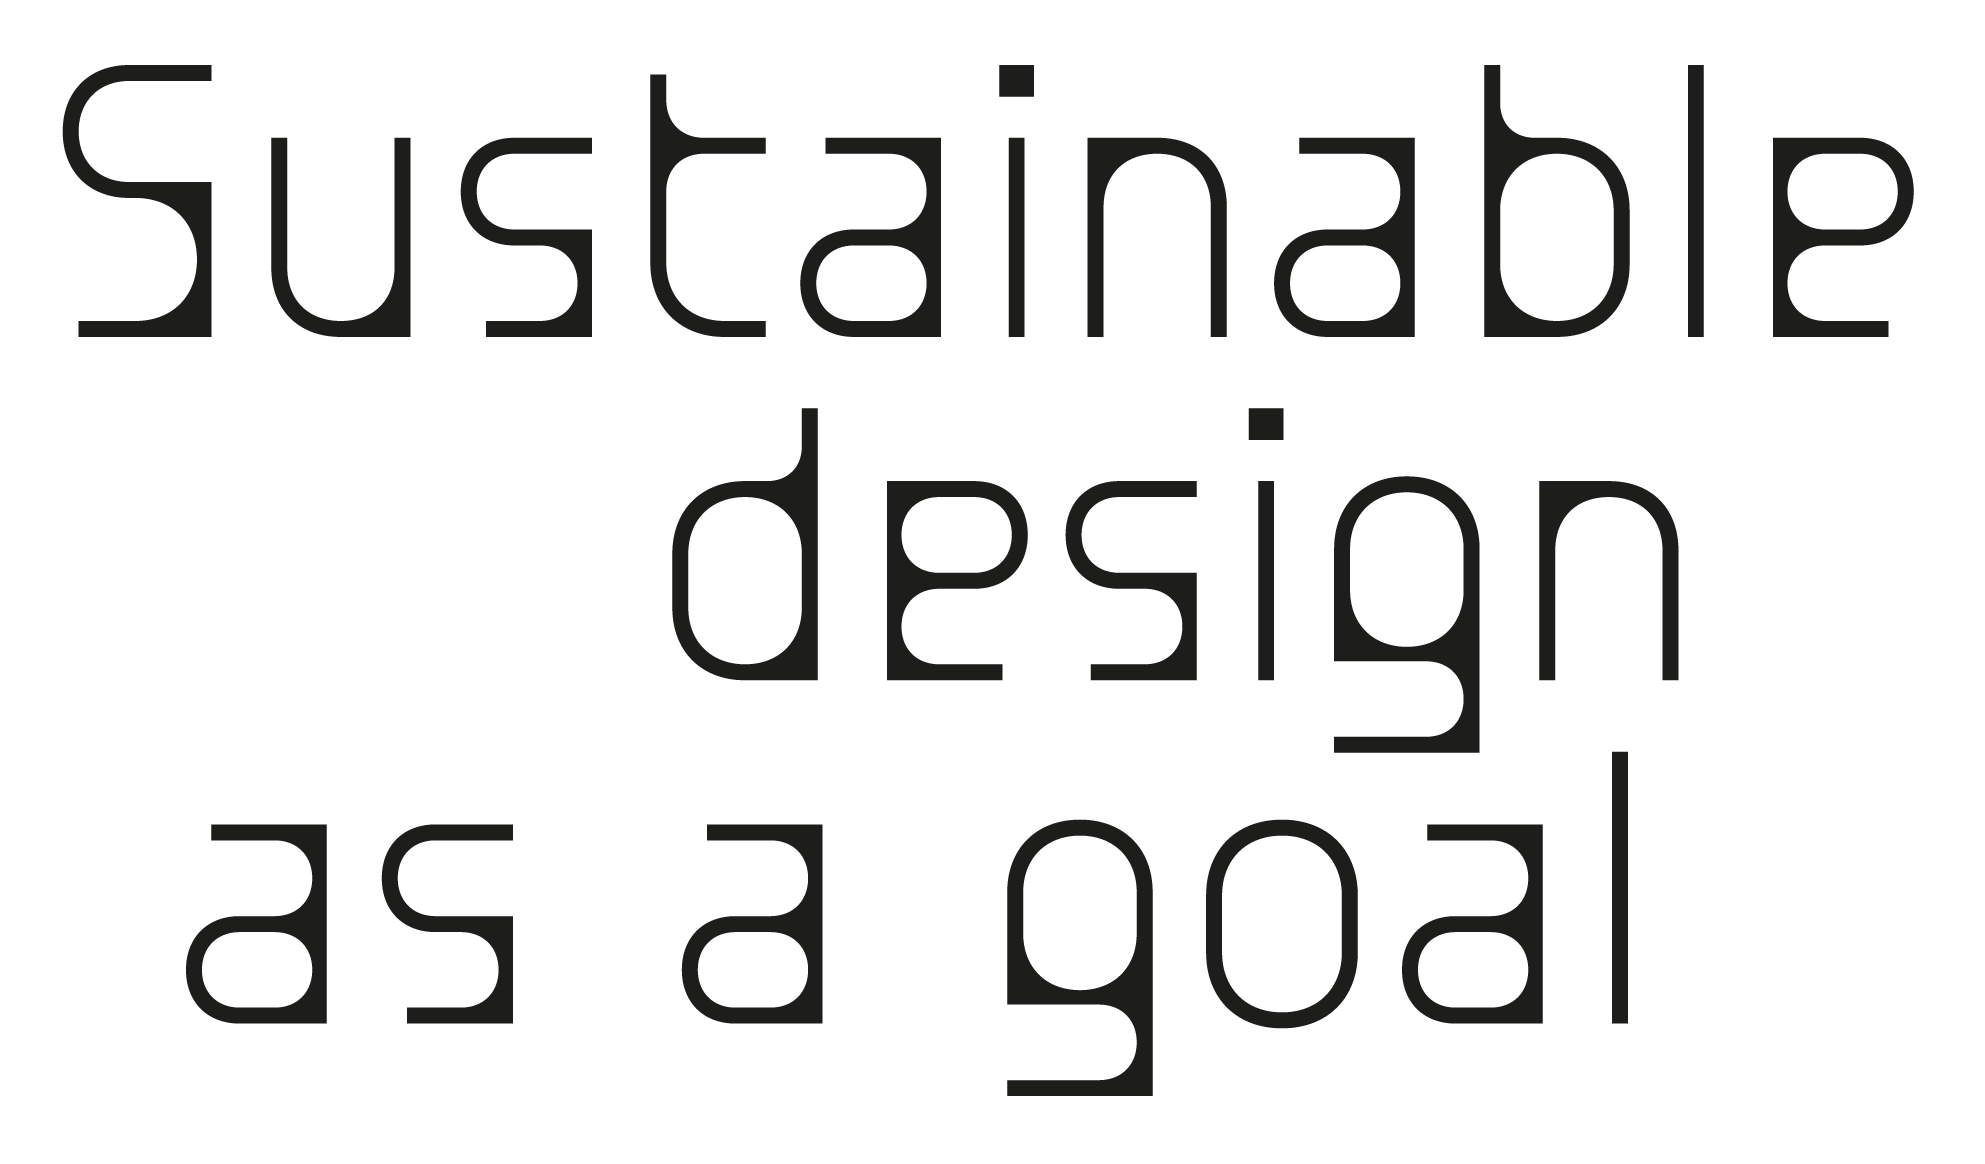 Thiết kế bền vững là công việc tạo ra những sản phẩm, công trình được tối ưu cho môi trường sống của con người. Với những thiết kế bền vững, chúng ta có thể giảm thiểu tác động tiêu cực đến môi trường và hướng tới một cuộc sống xanh hơn, tốt hơn. Hãy cùng xem những hệ thống thiết kế bền vững đẹp mắt và tiện nghi.